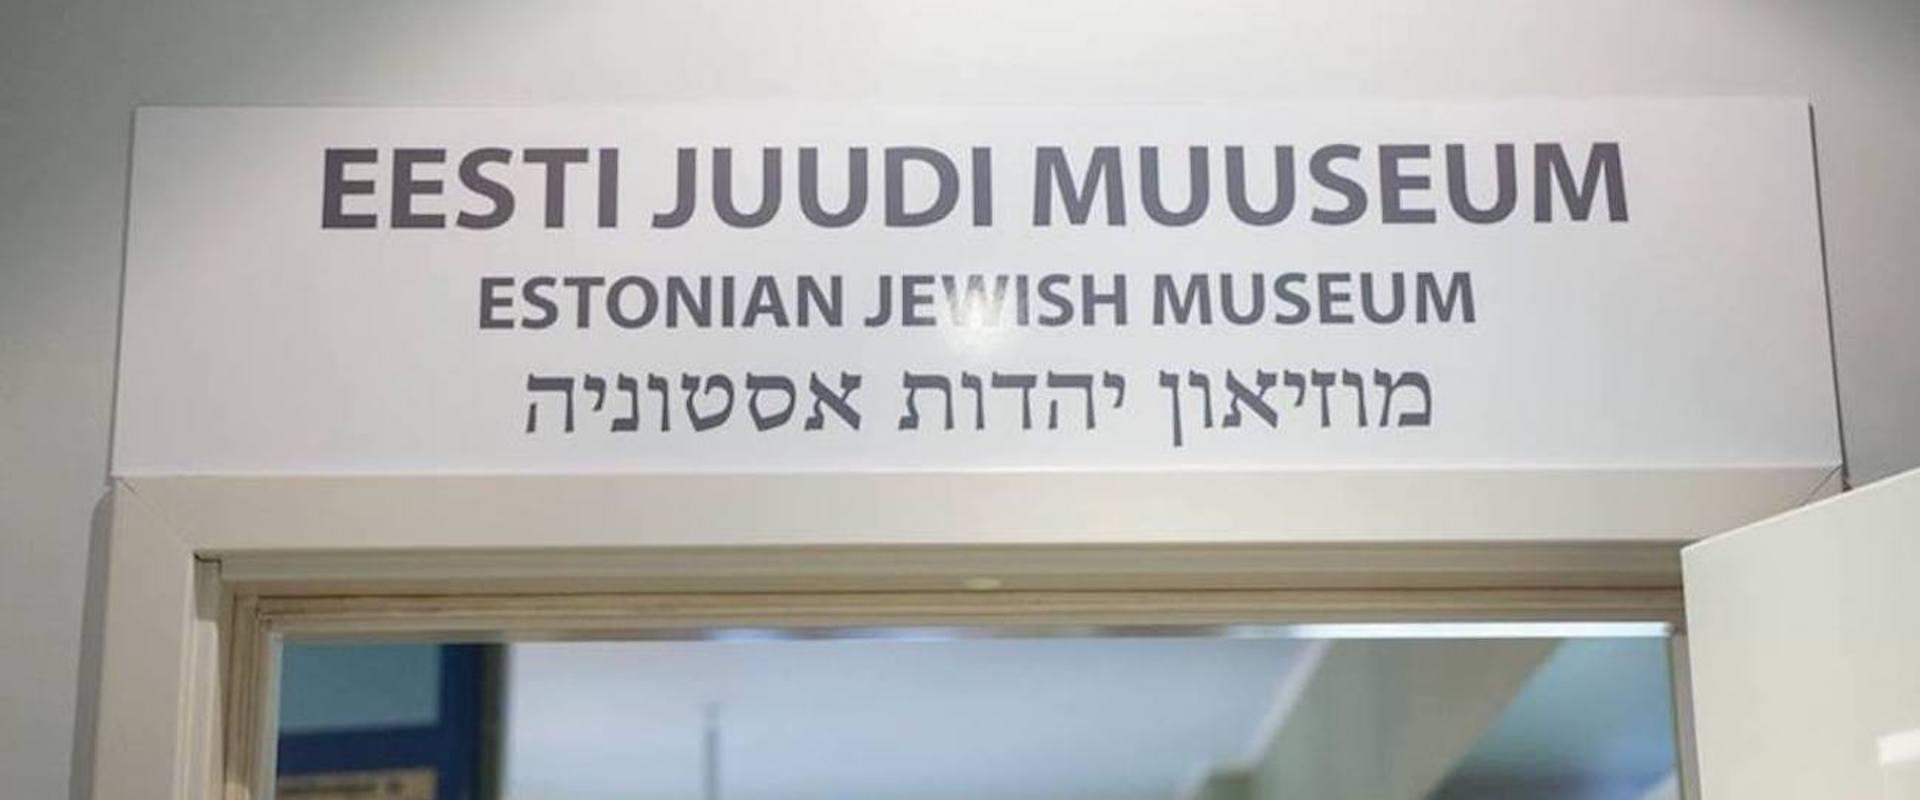 Jewish history tour in Tallinn